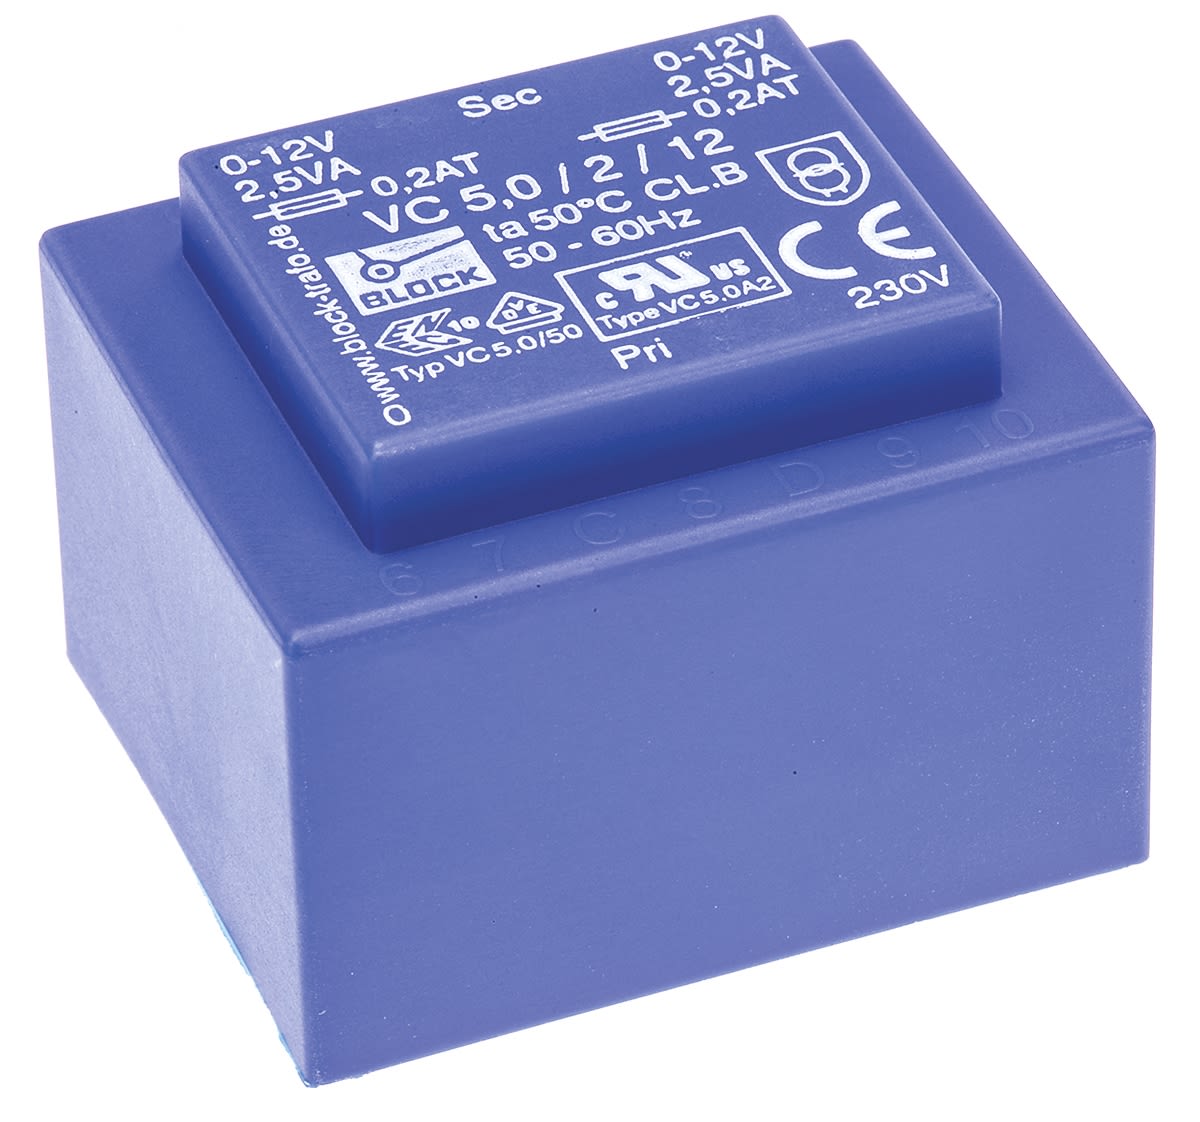 Transformateur pour circuit imprimé Block, 12V c.a., 230V c.a., 5VA, 2 sorties